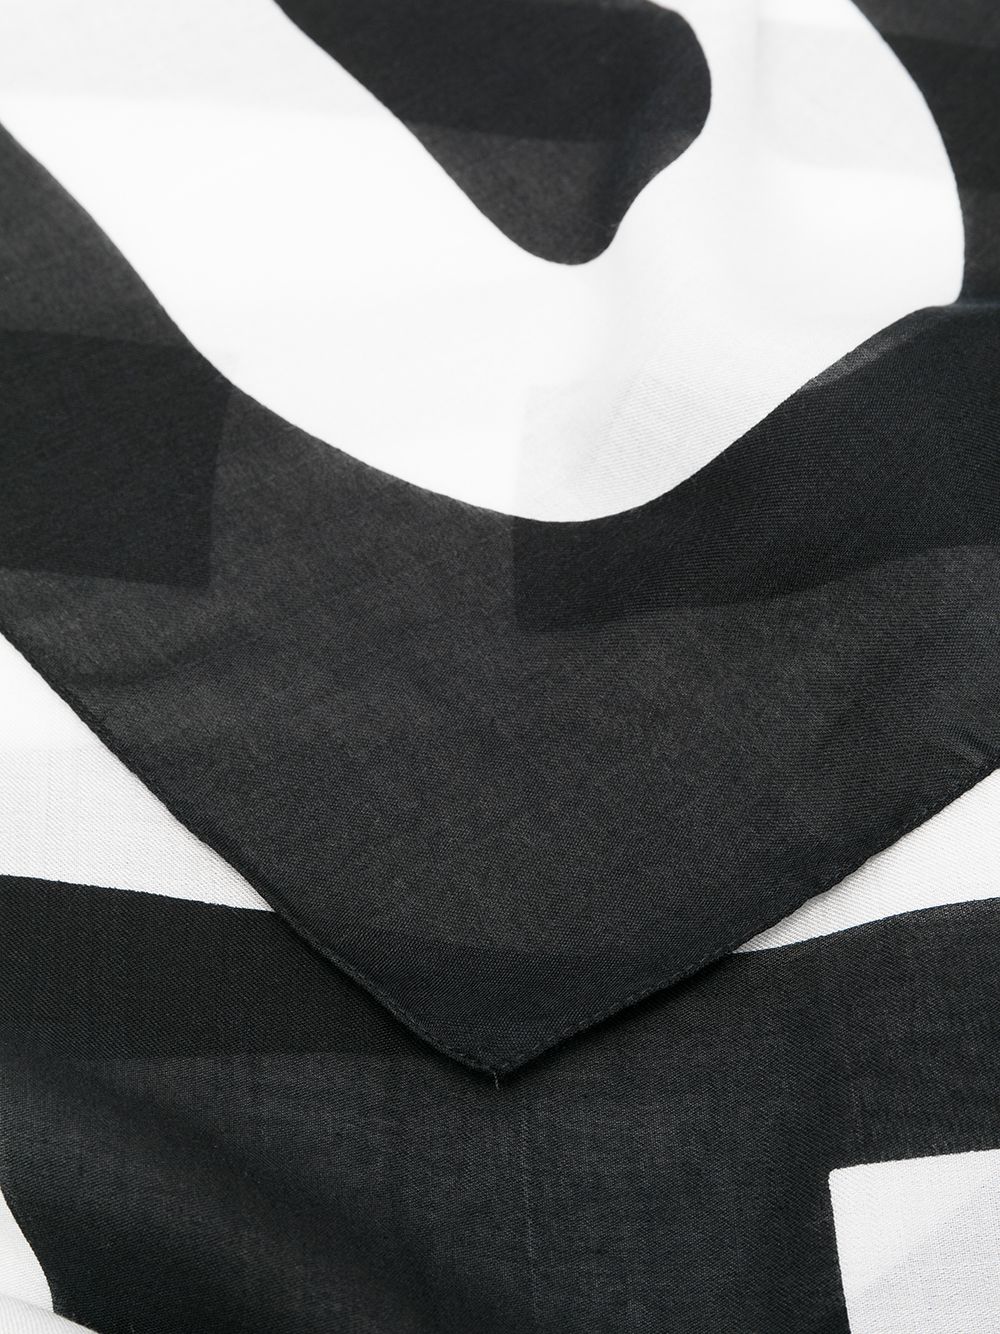 шарф с логотипом Love Moschino 16434333636363633263